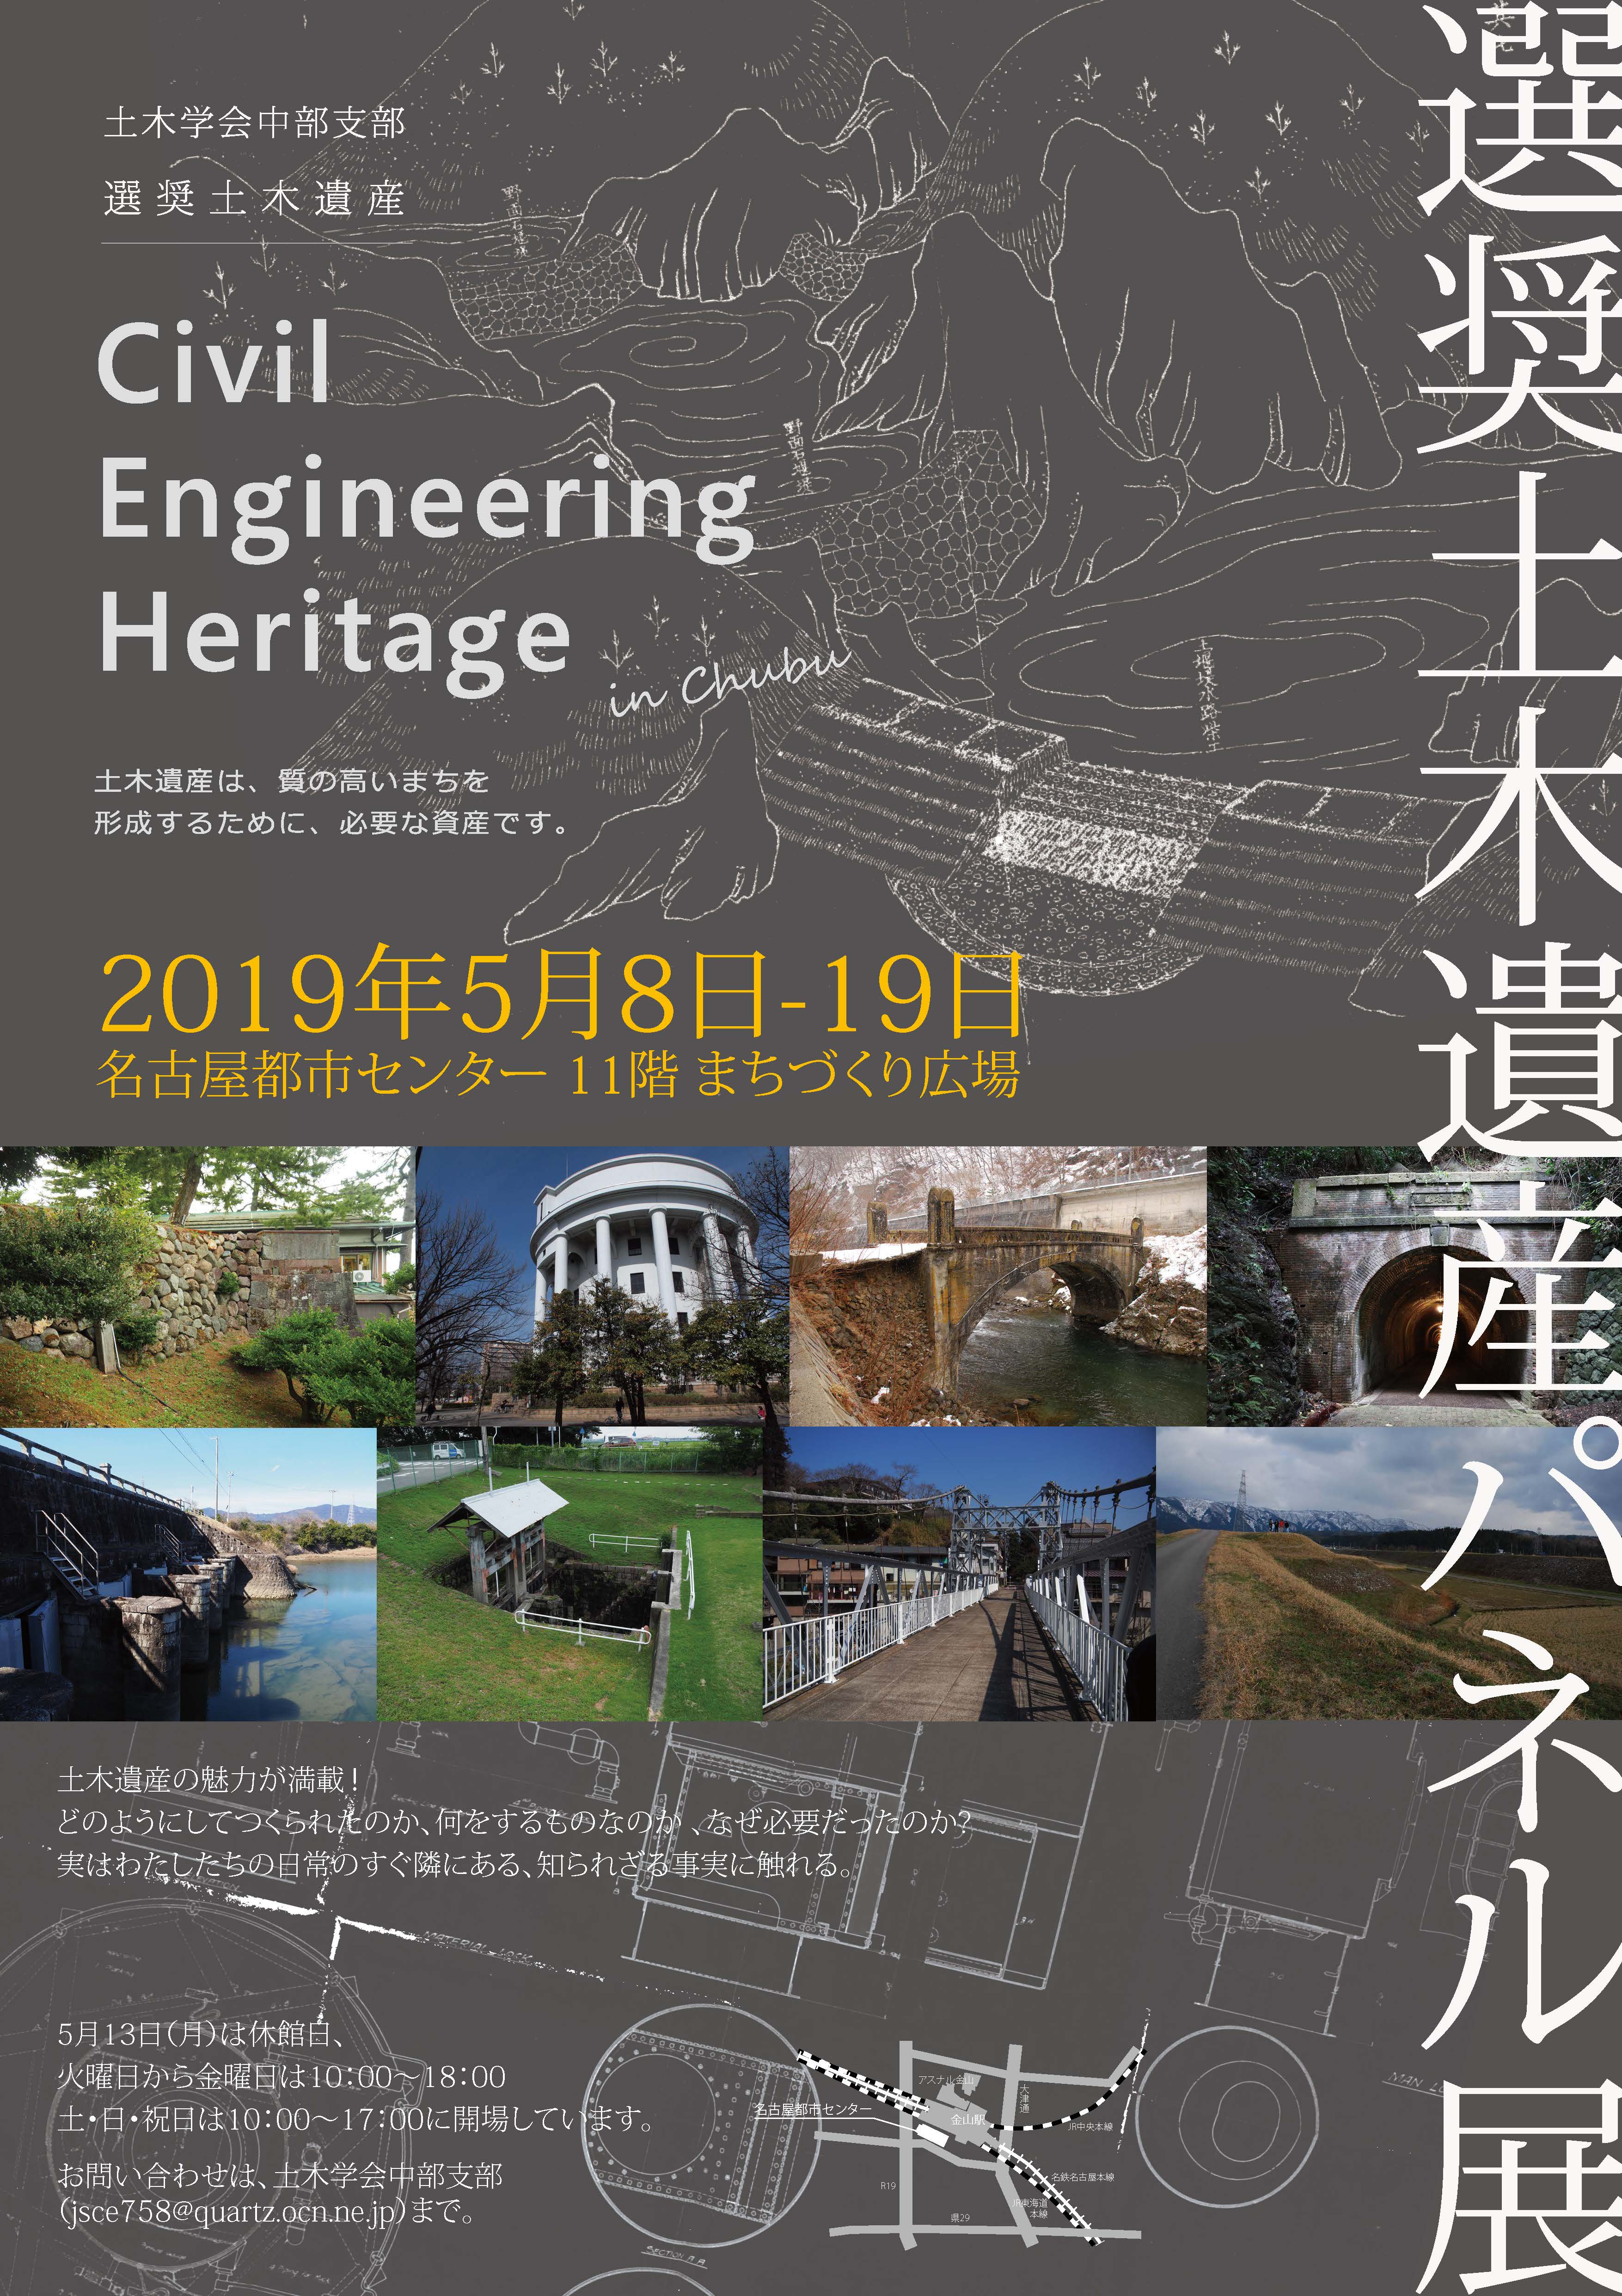 選奨土木遺産パネル展「Civil Engineering Heritage in Chubu2019」